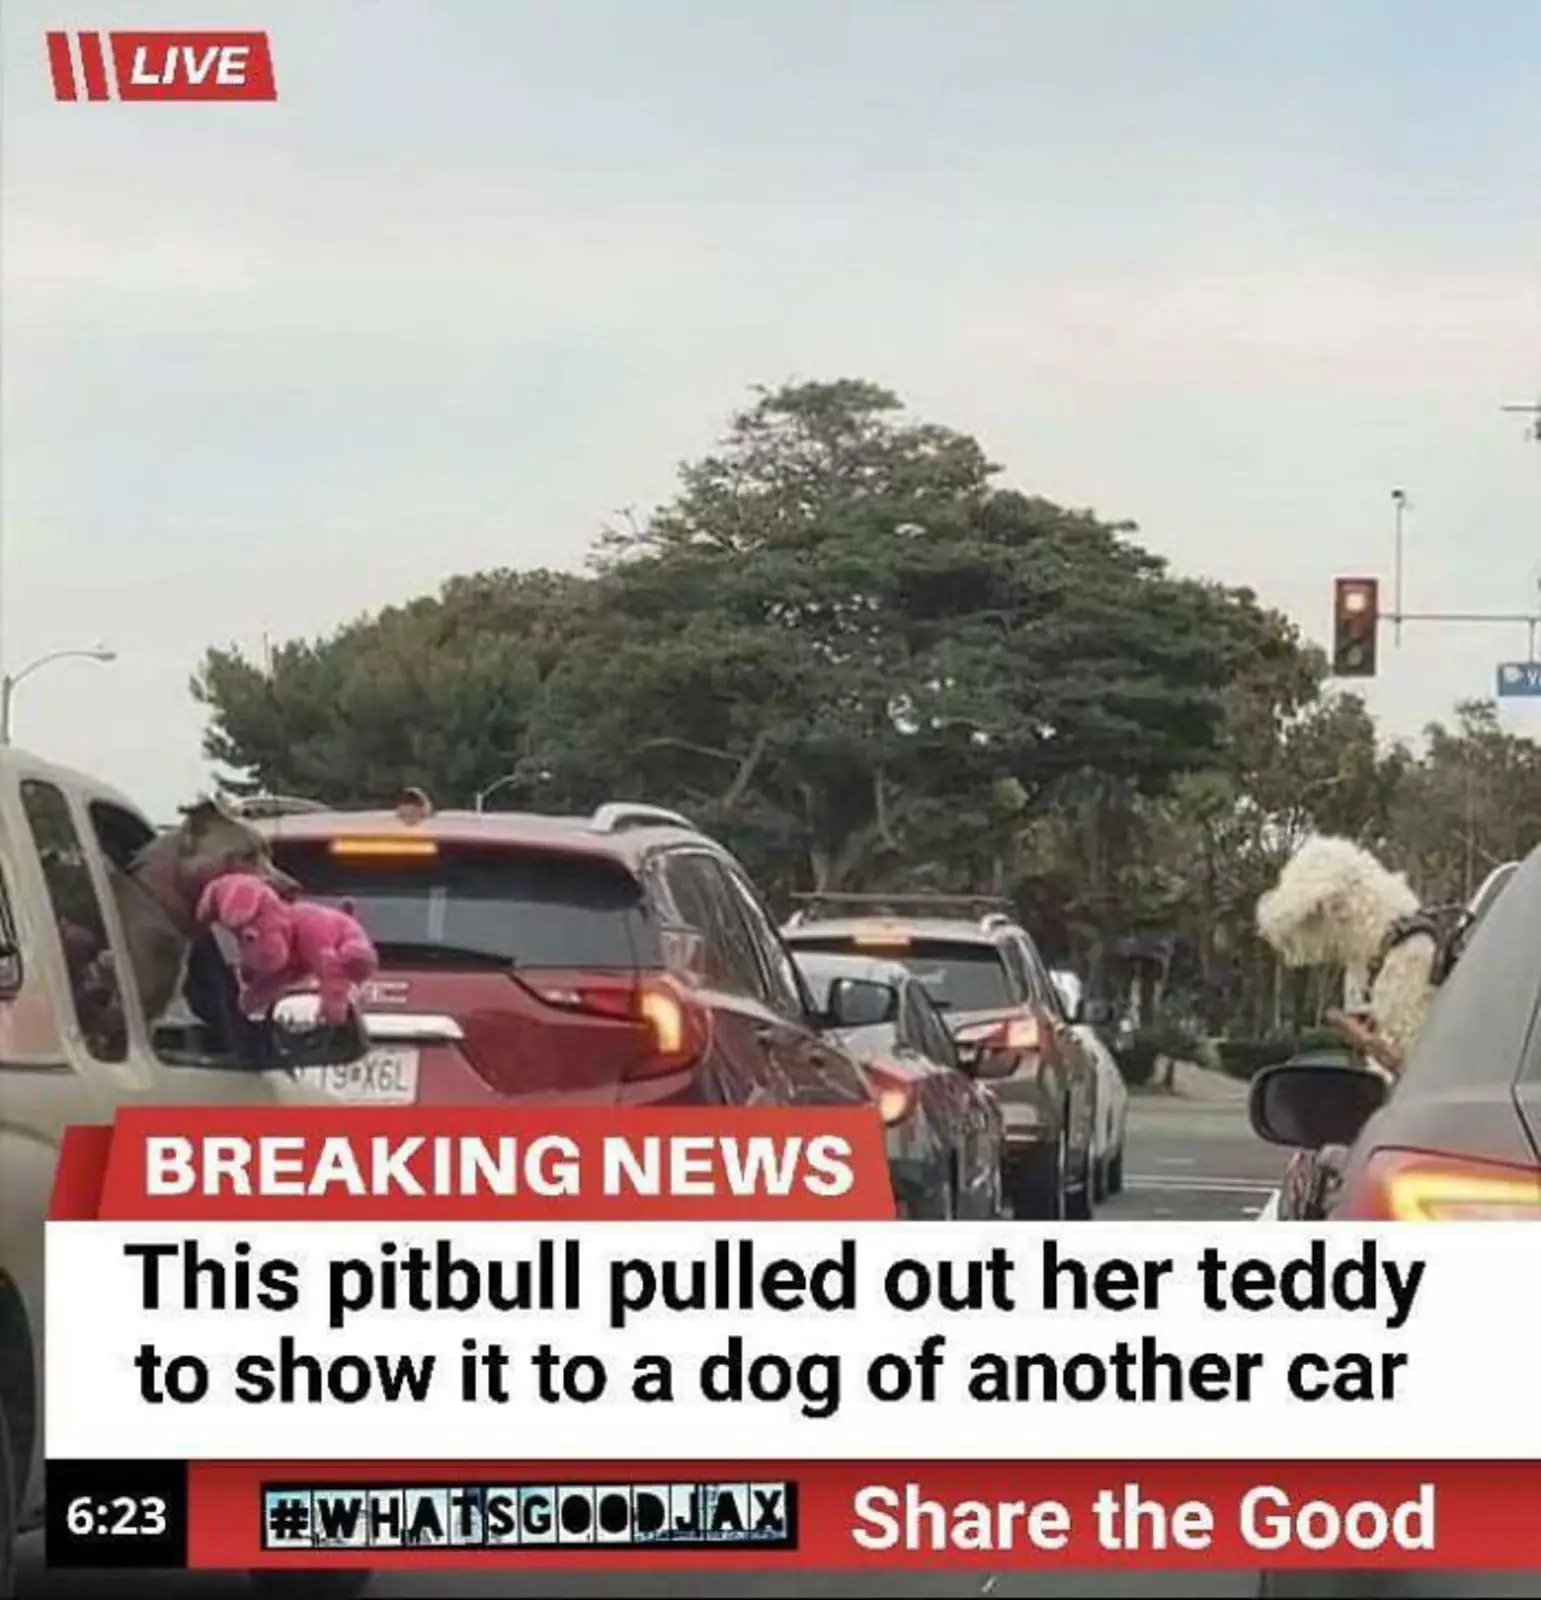 СРОЧНЫЕ НОВОСТИ: Питбуль вытащил игрушку, чтобы показать собаке из другой машины.